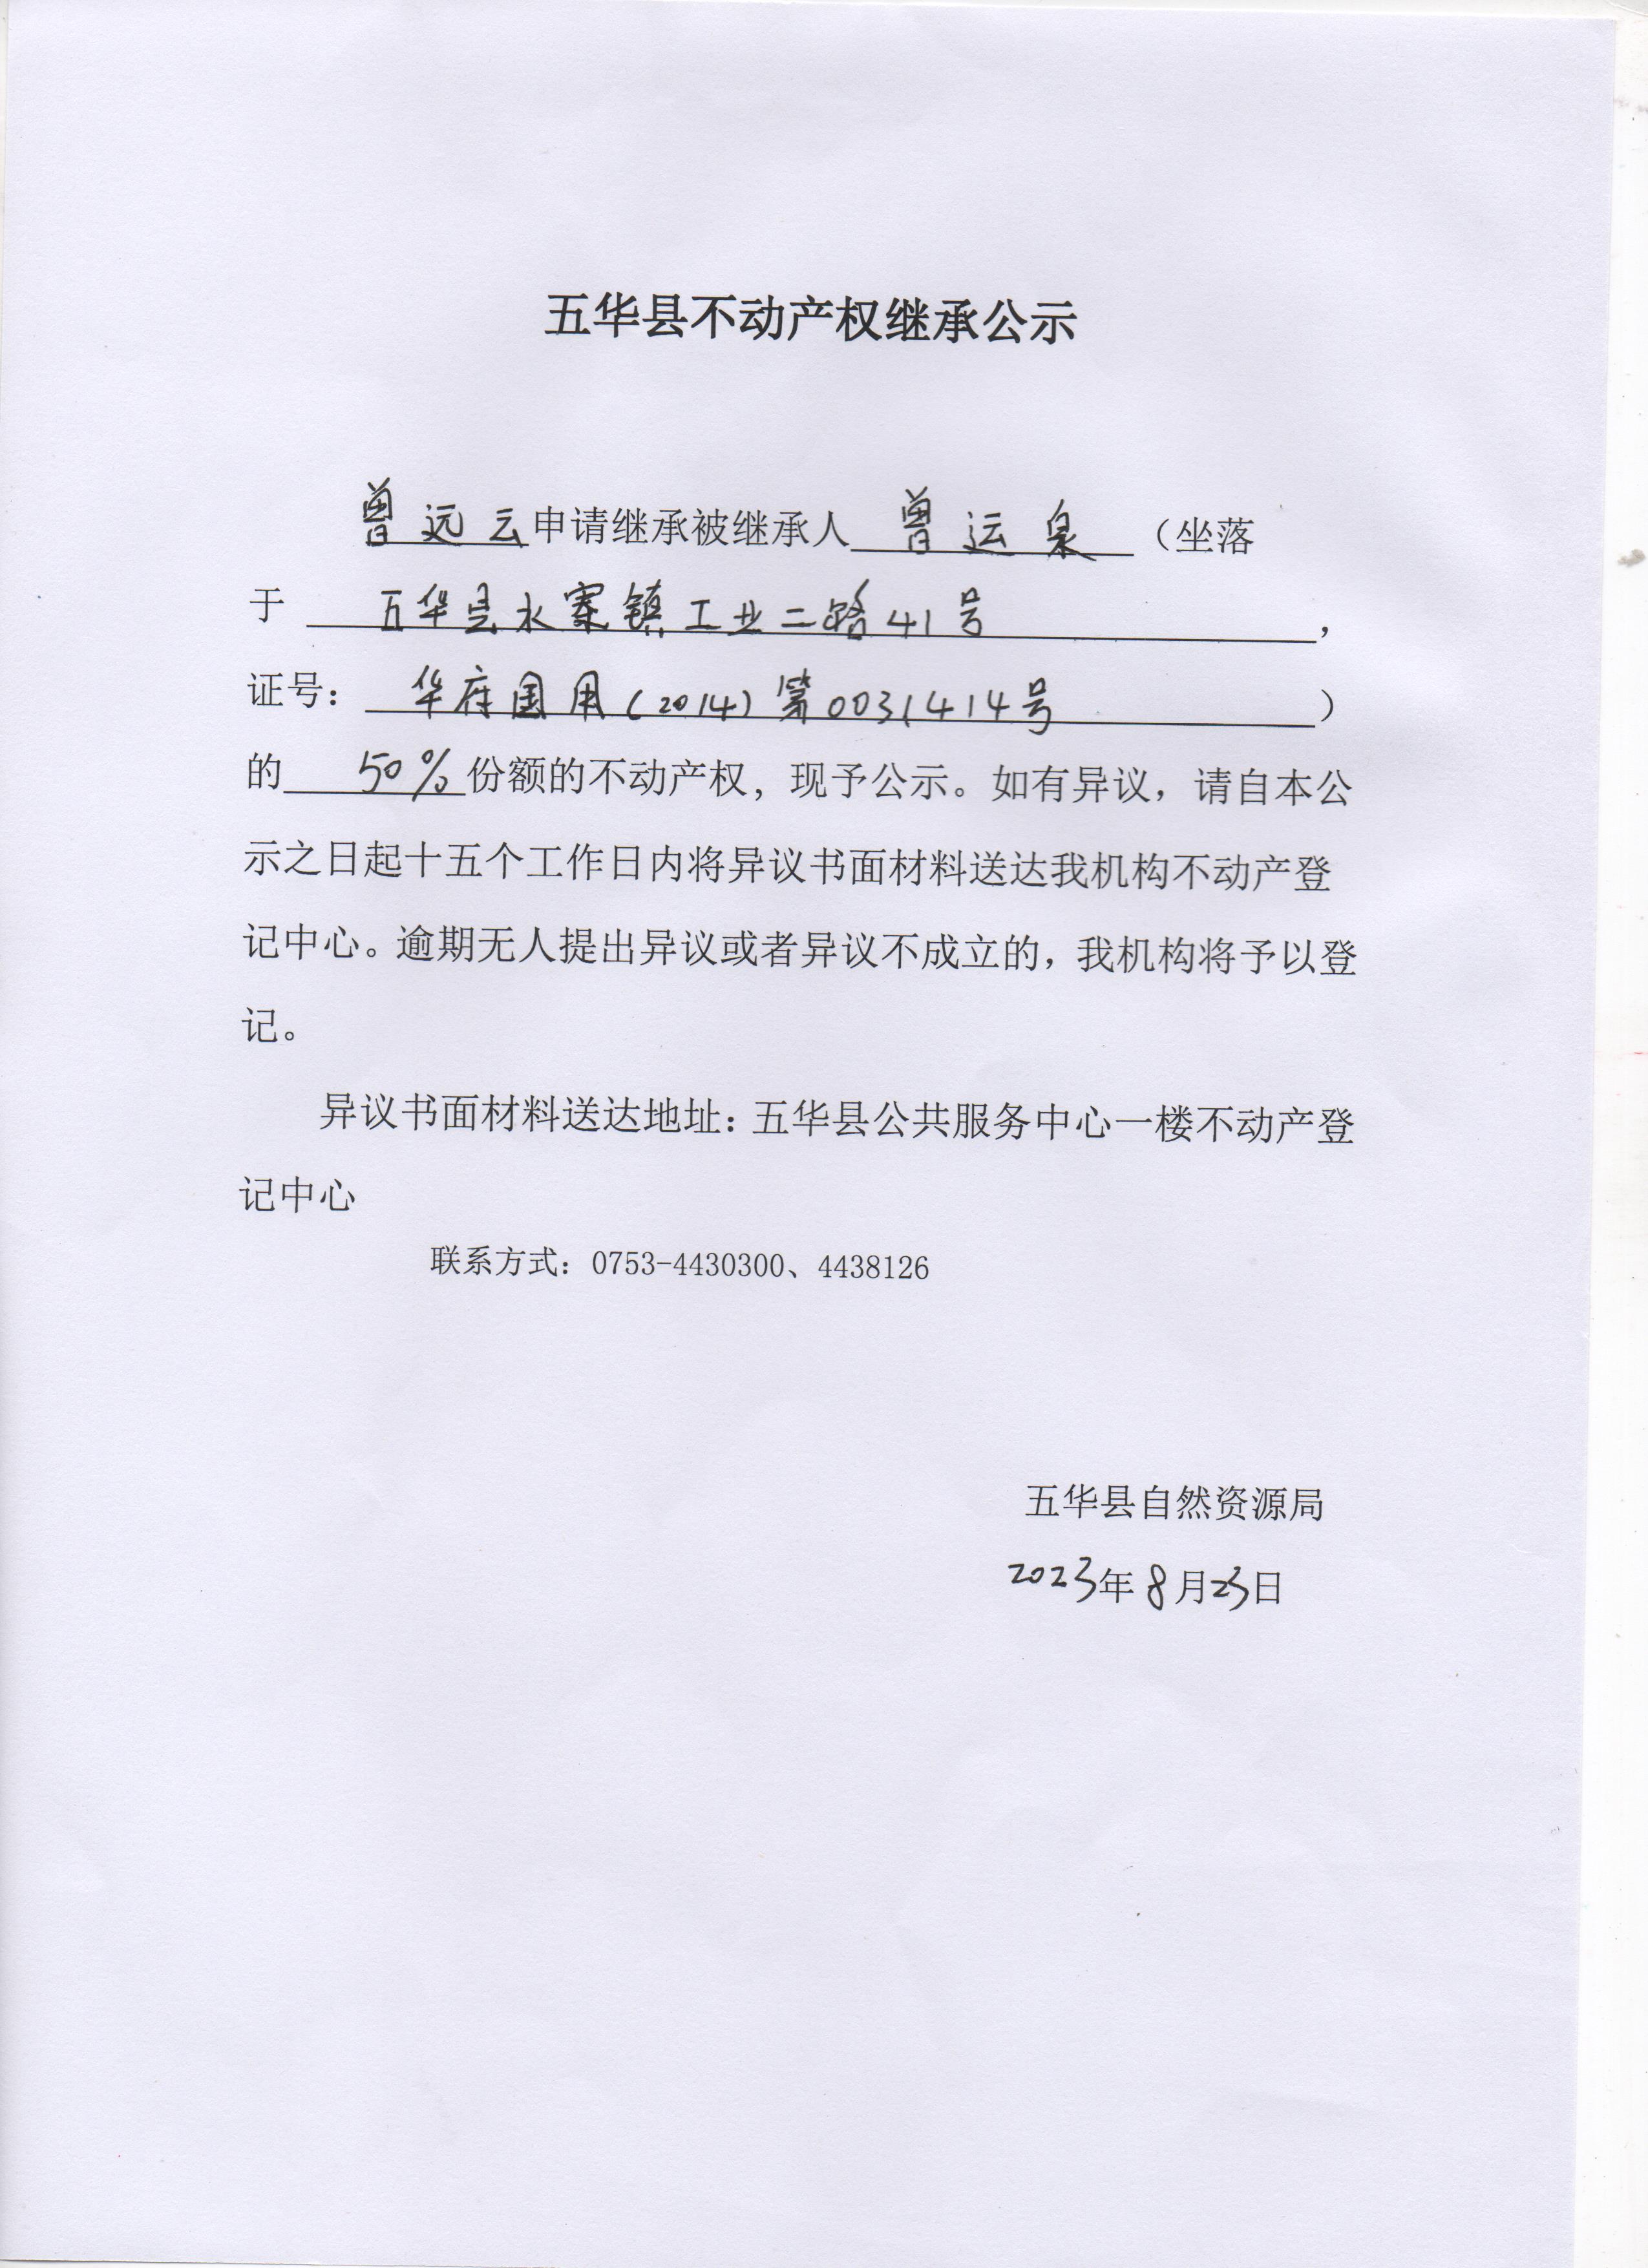 五华县不动产权继承公示（曾运泉） 001.jpg